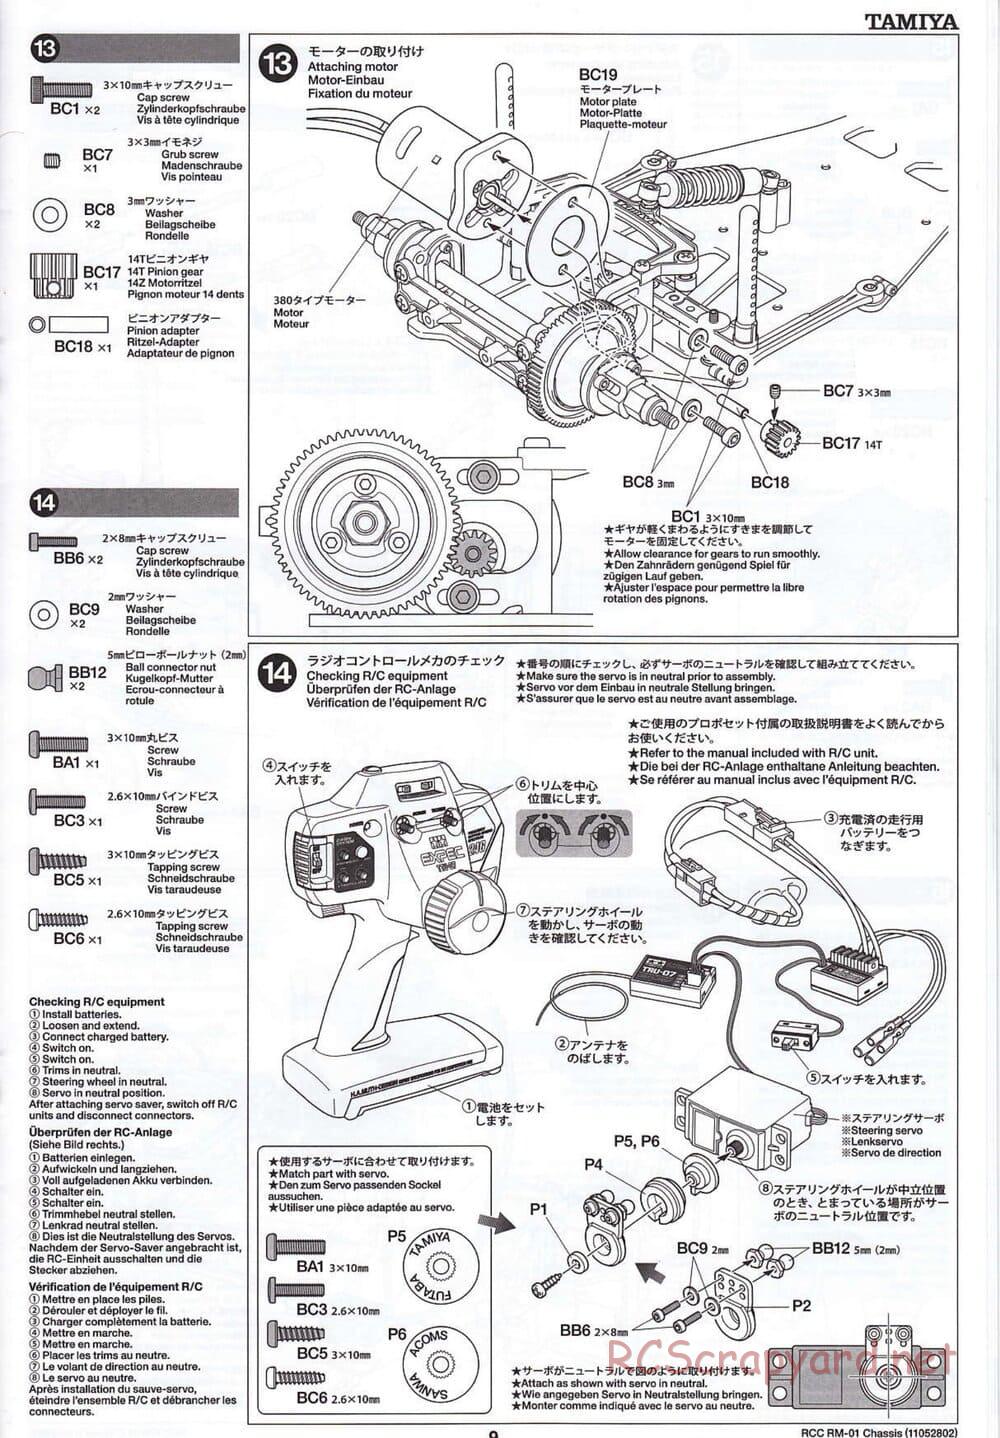 Tamiya - TA04-SS Chassis - Manual - Page 9